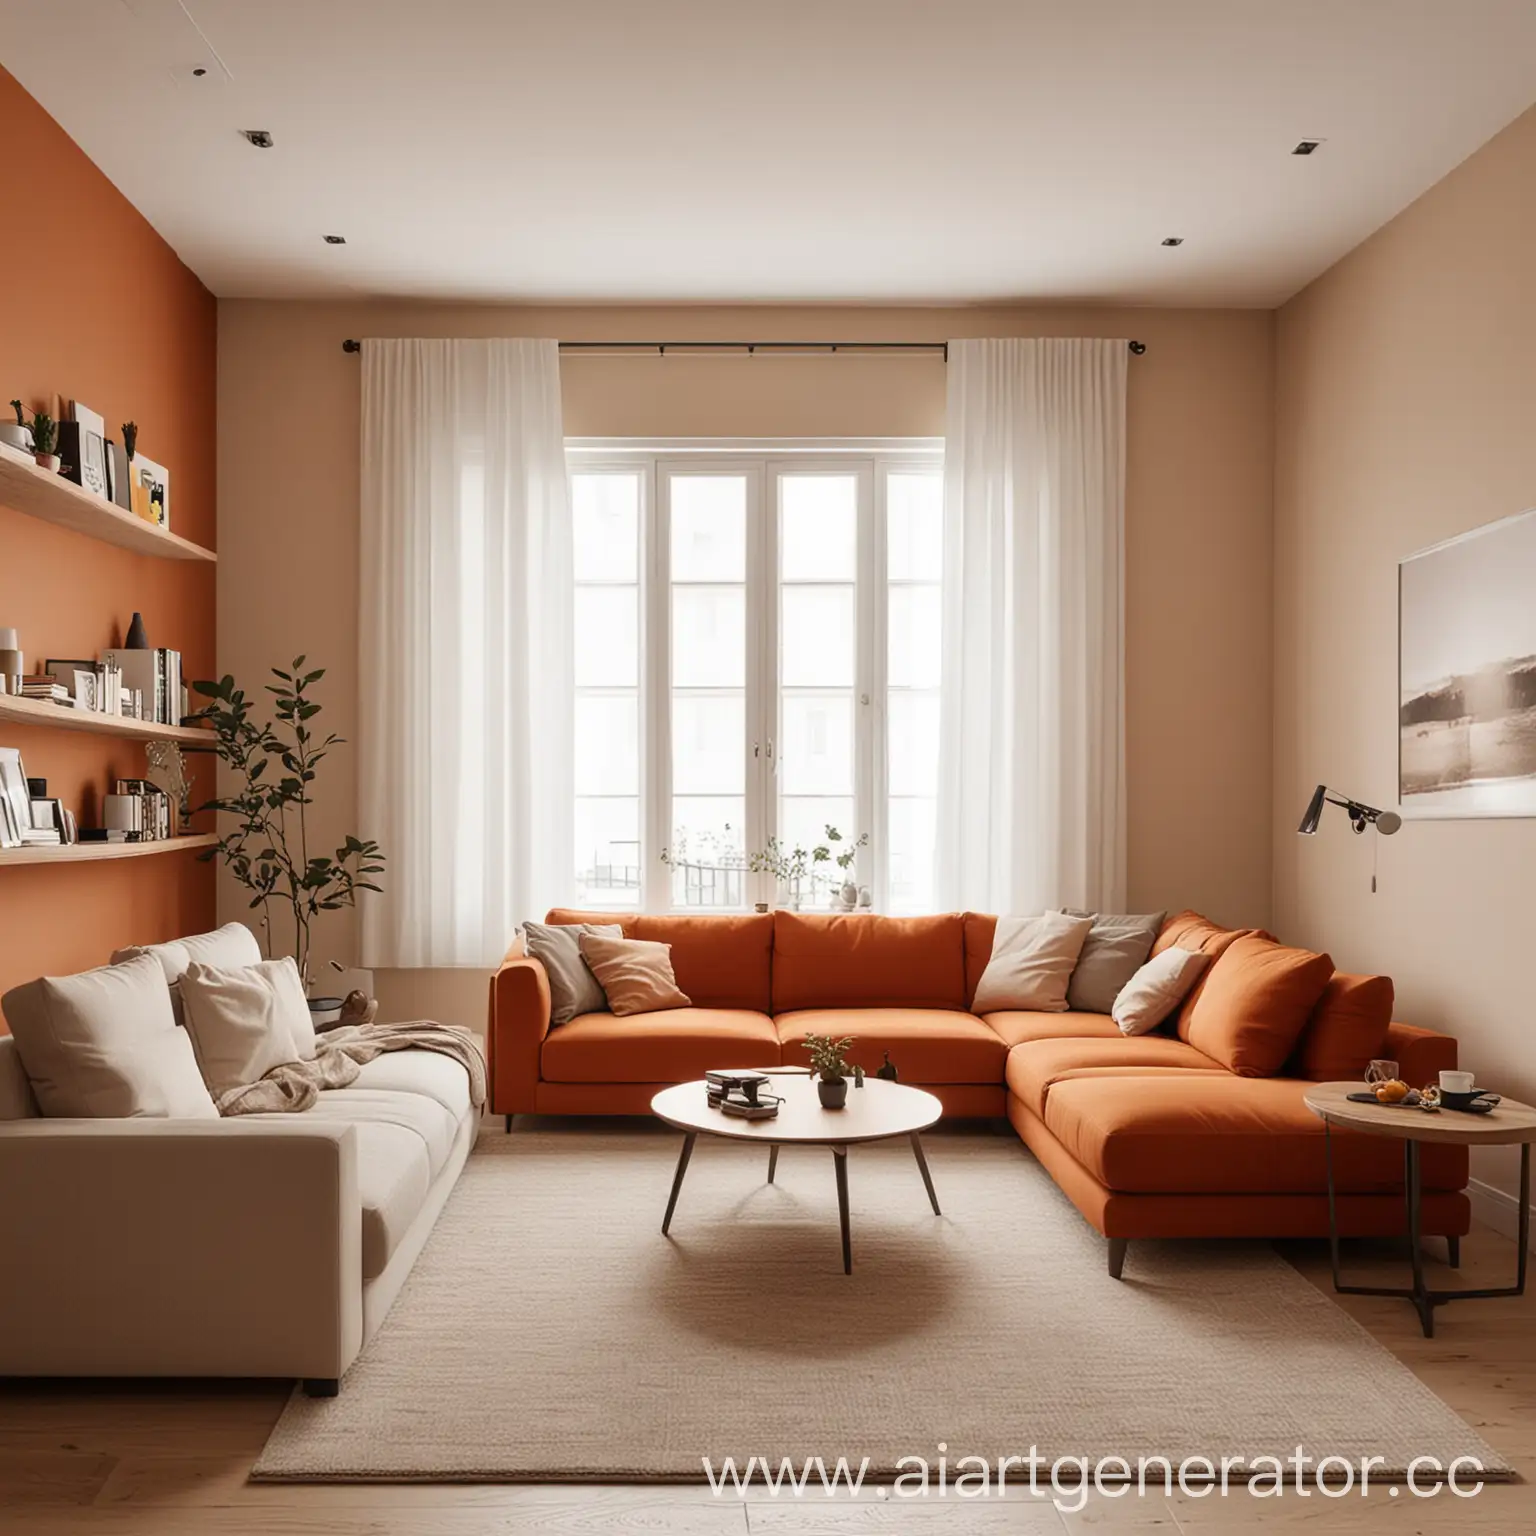 Комната с мебелью в минималистичном стиле, цвета тёплые, с преобладанием тёплых оттенков